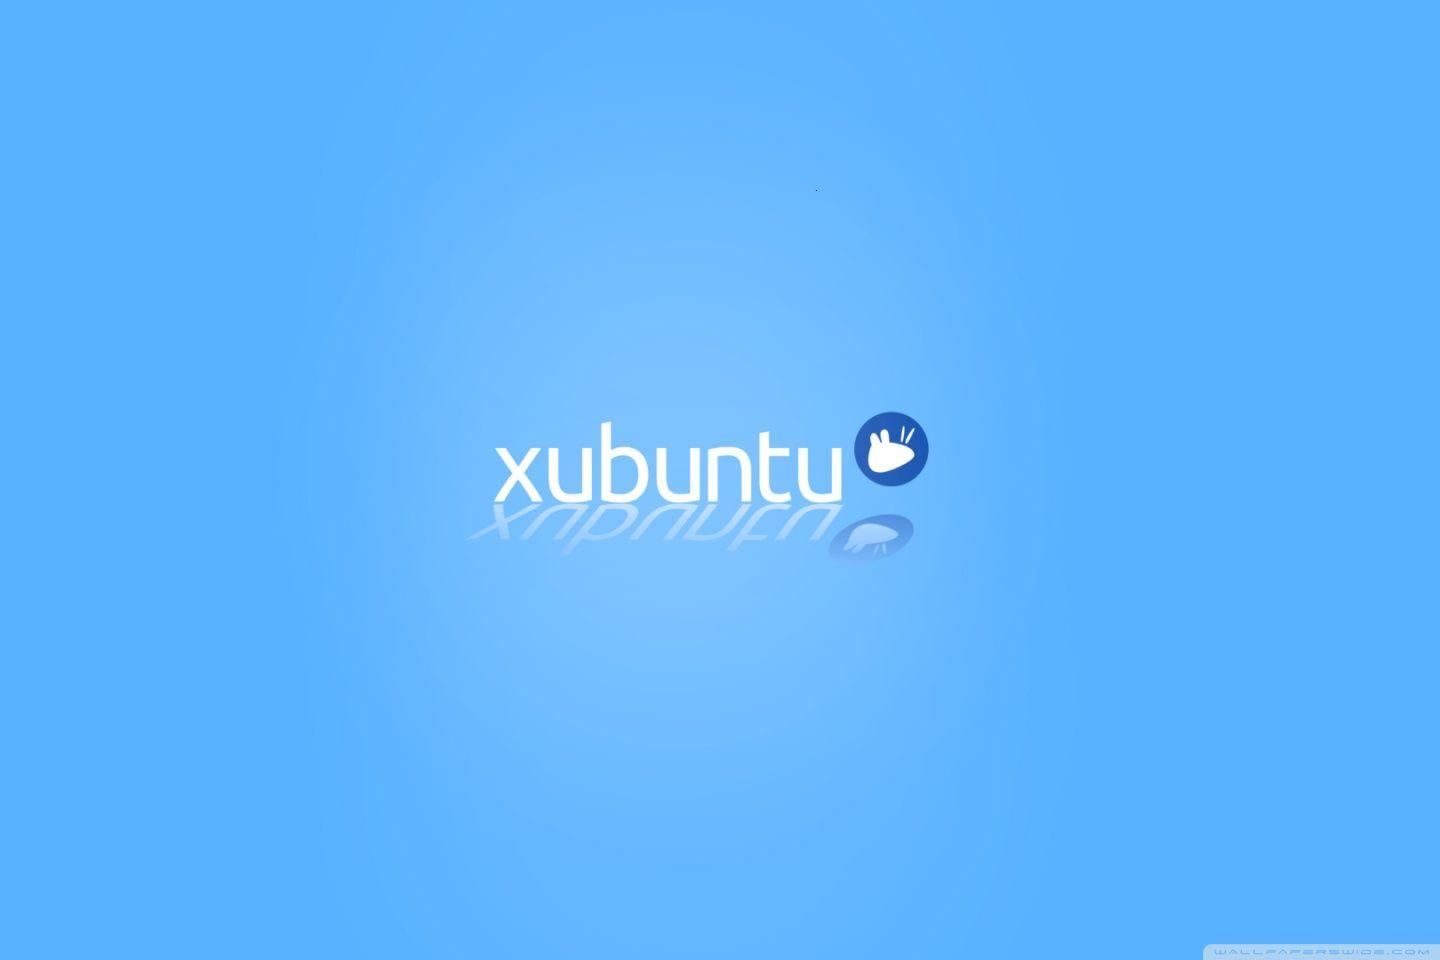 Xubuntu Logo - Xubuntu logo 2.0 ❤ 4K HD Desktop Wallpaper for 4K Ultra HD TV